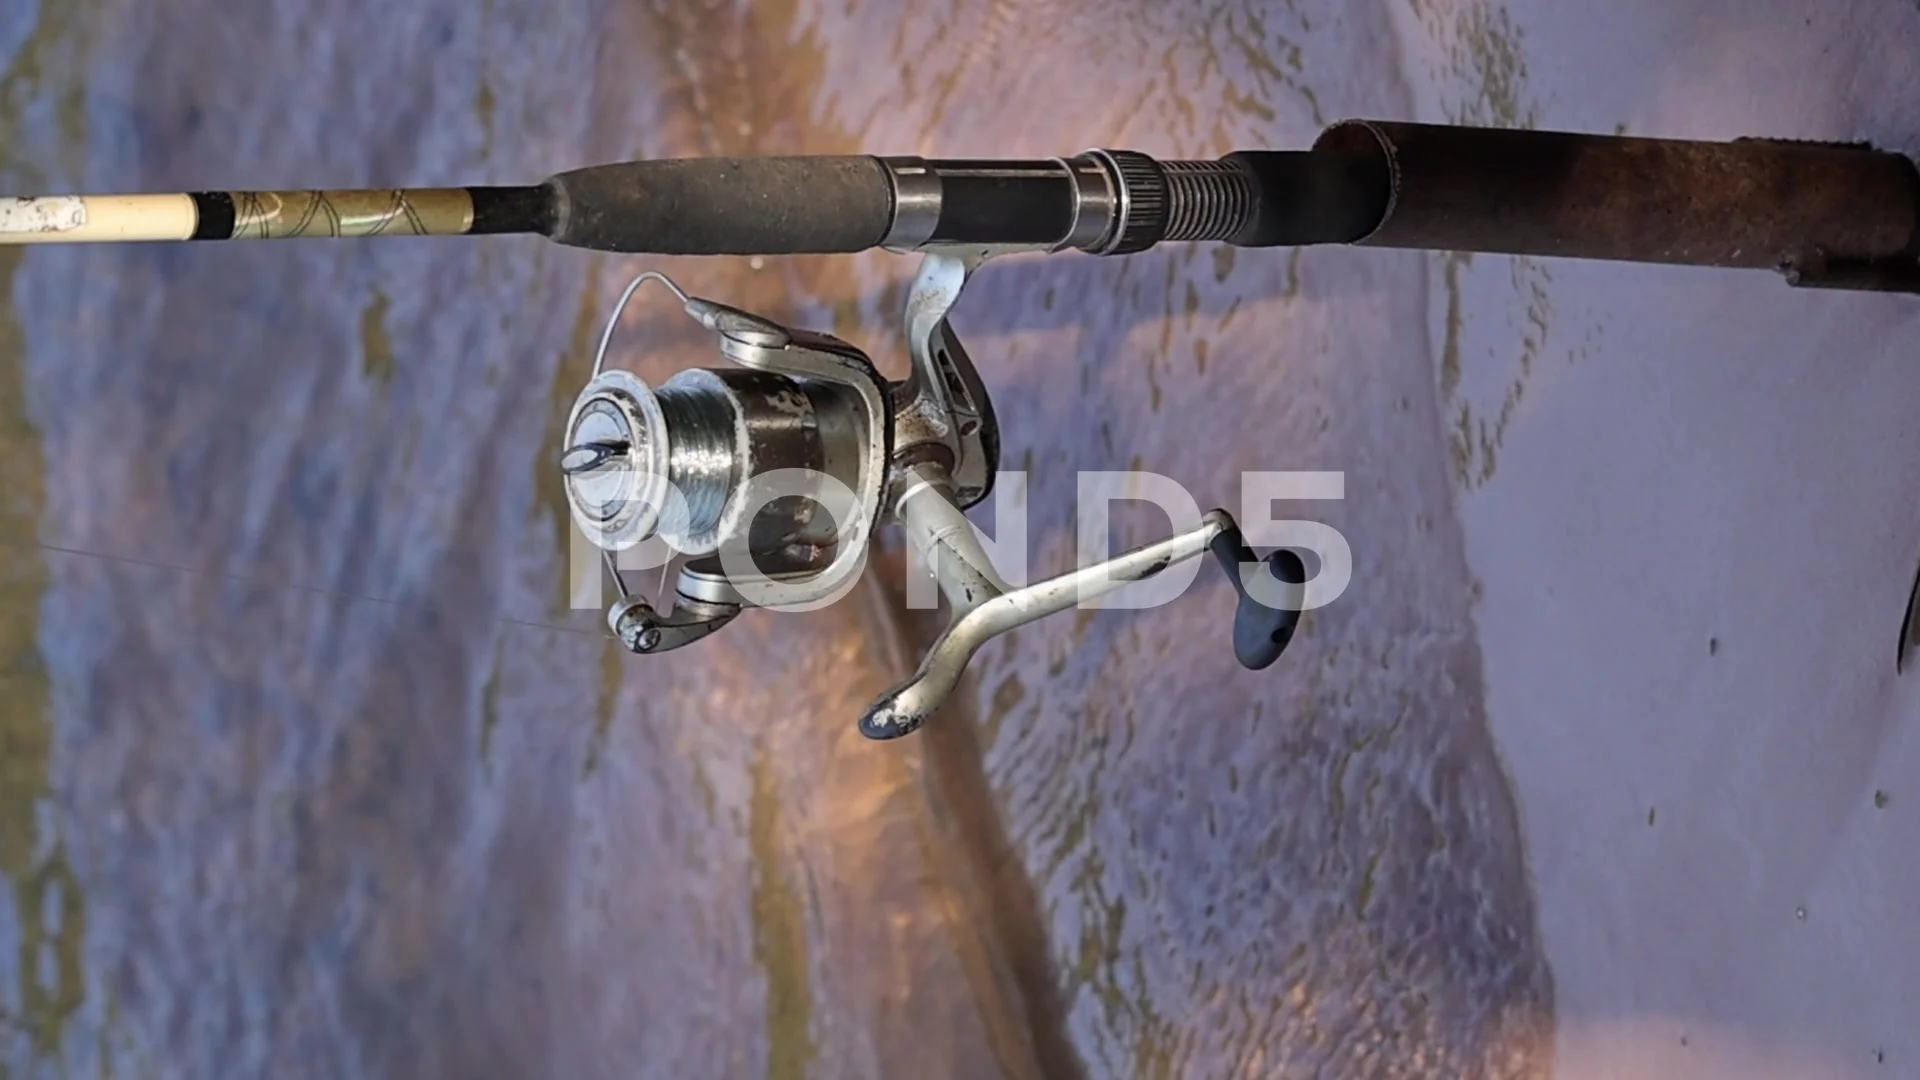 https://images.pond5.com/vertical-video-fishing-rod-reel-footage-247926543_prevstill.jpeg